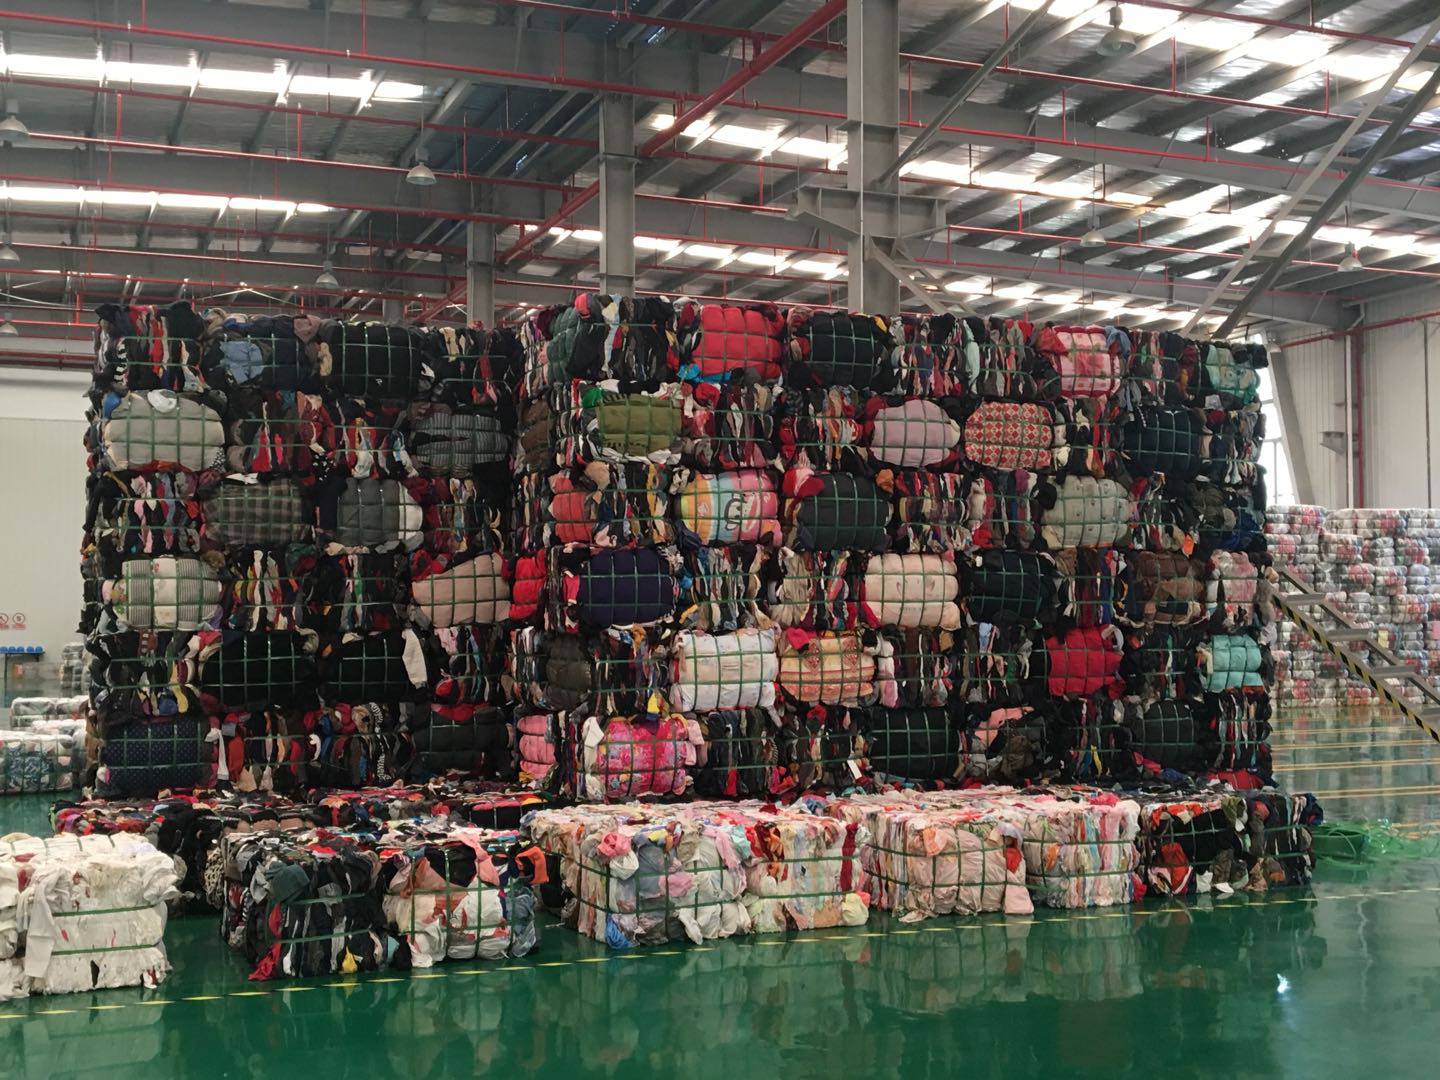 Donated clothes at a Fei Mayi warehouse. Fei Mayi